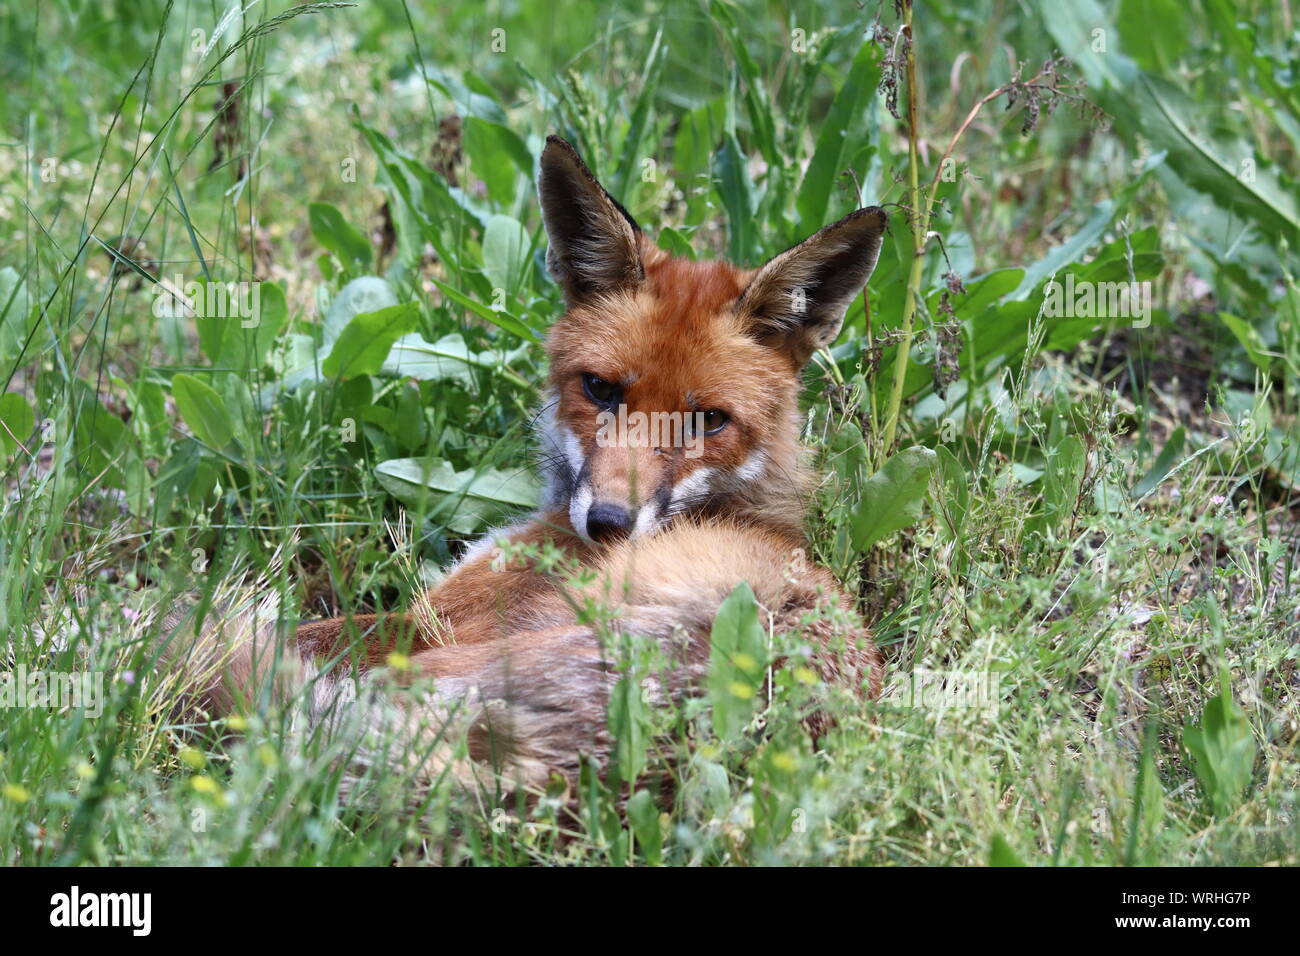 Ein junger Rotfuchs Balatonfüred entspannt im Gras und schaut in die Kamera* Ein junger Roter Fuchs liegt im Gras und Schaut aufmerksam in die Kamera Stockfoto